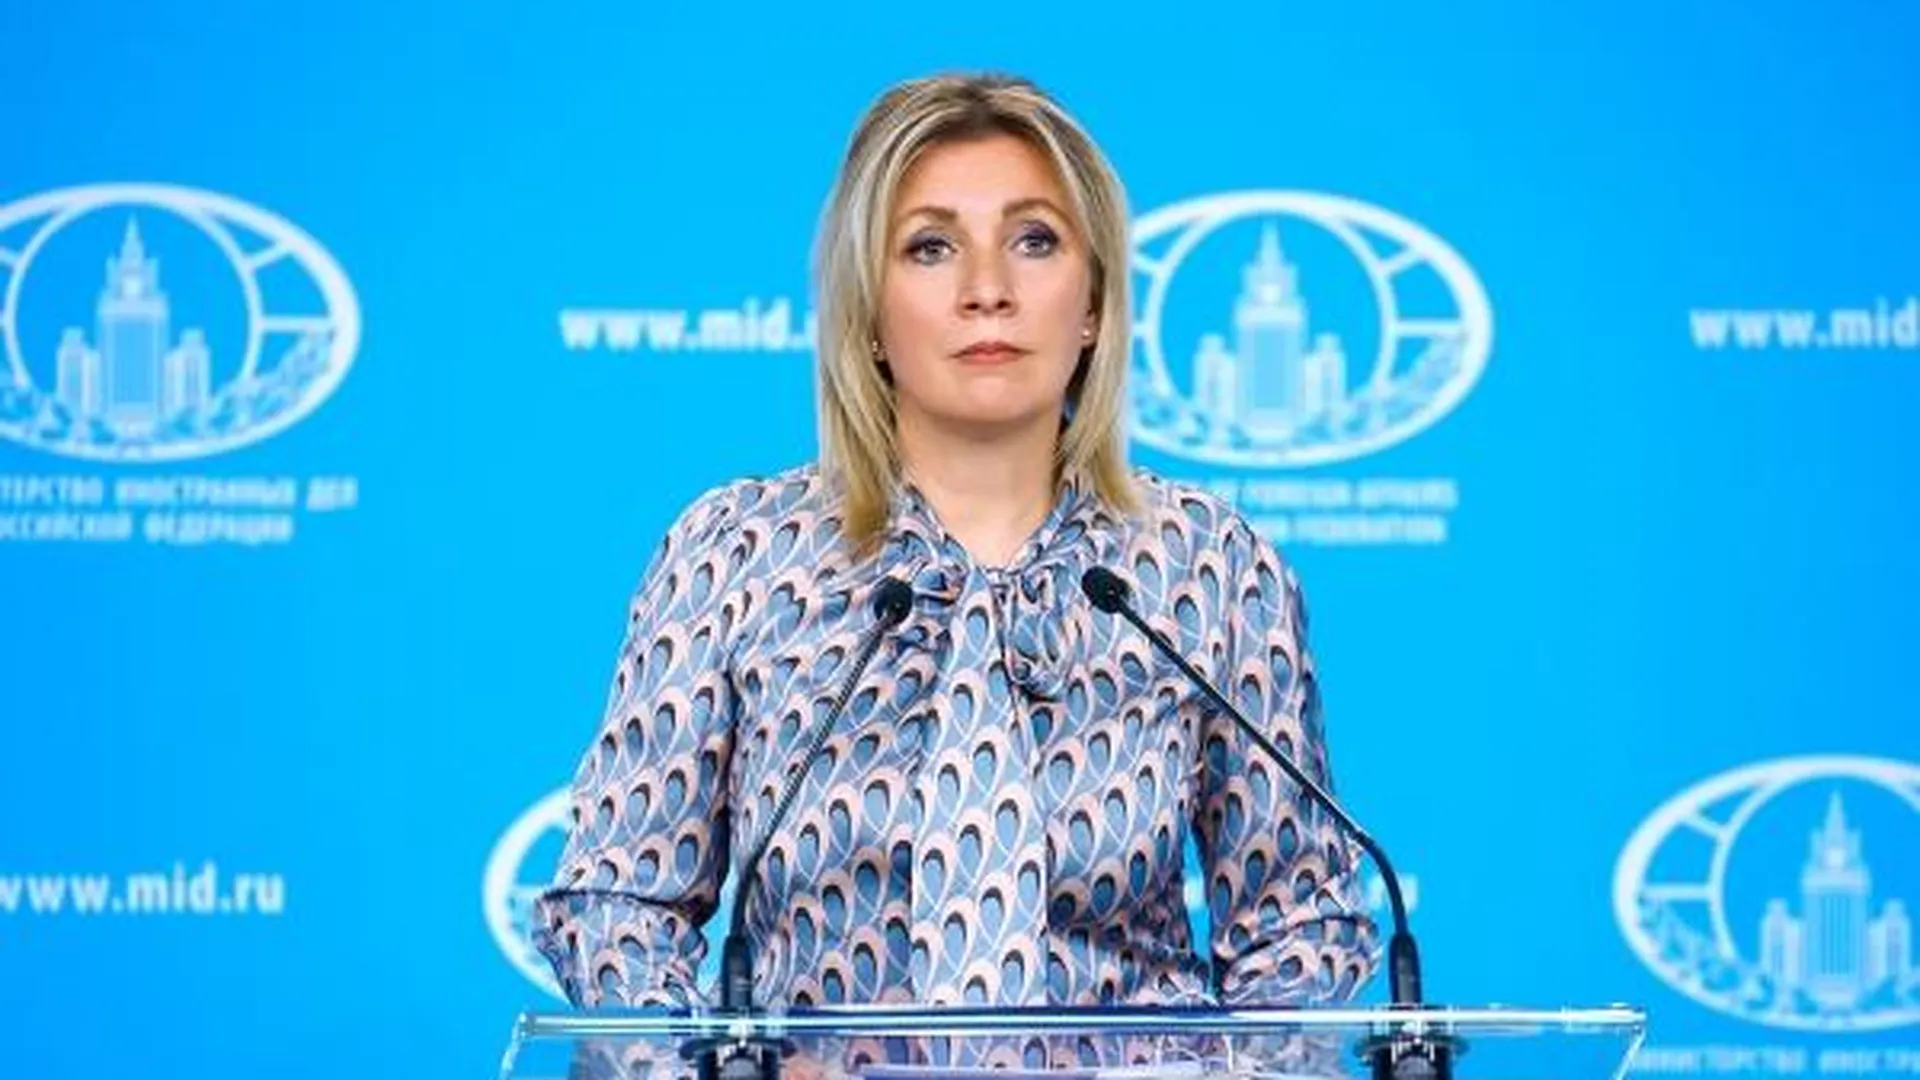 Захарова сообщила о готовности России к диалогу по контролю над вооружениями